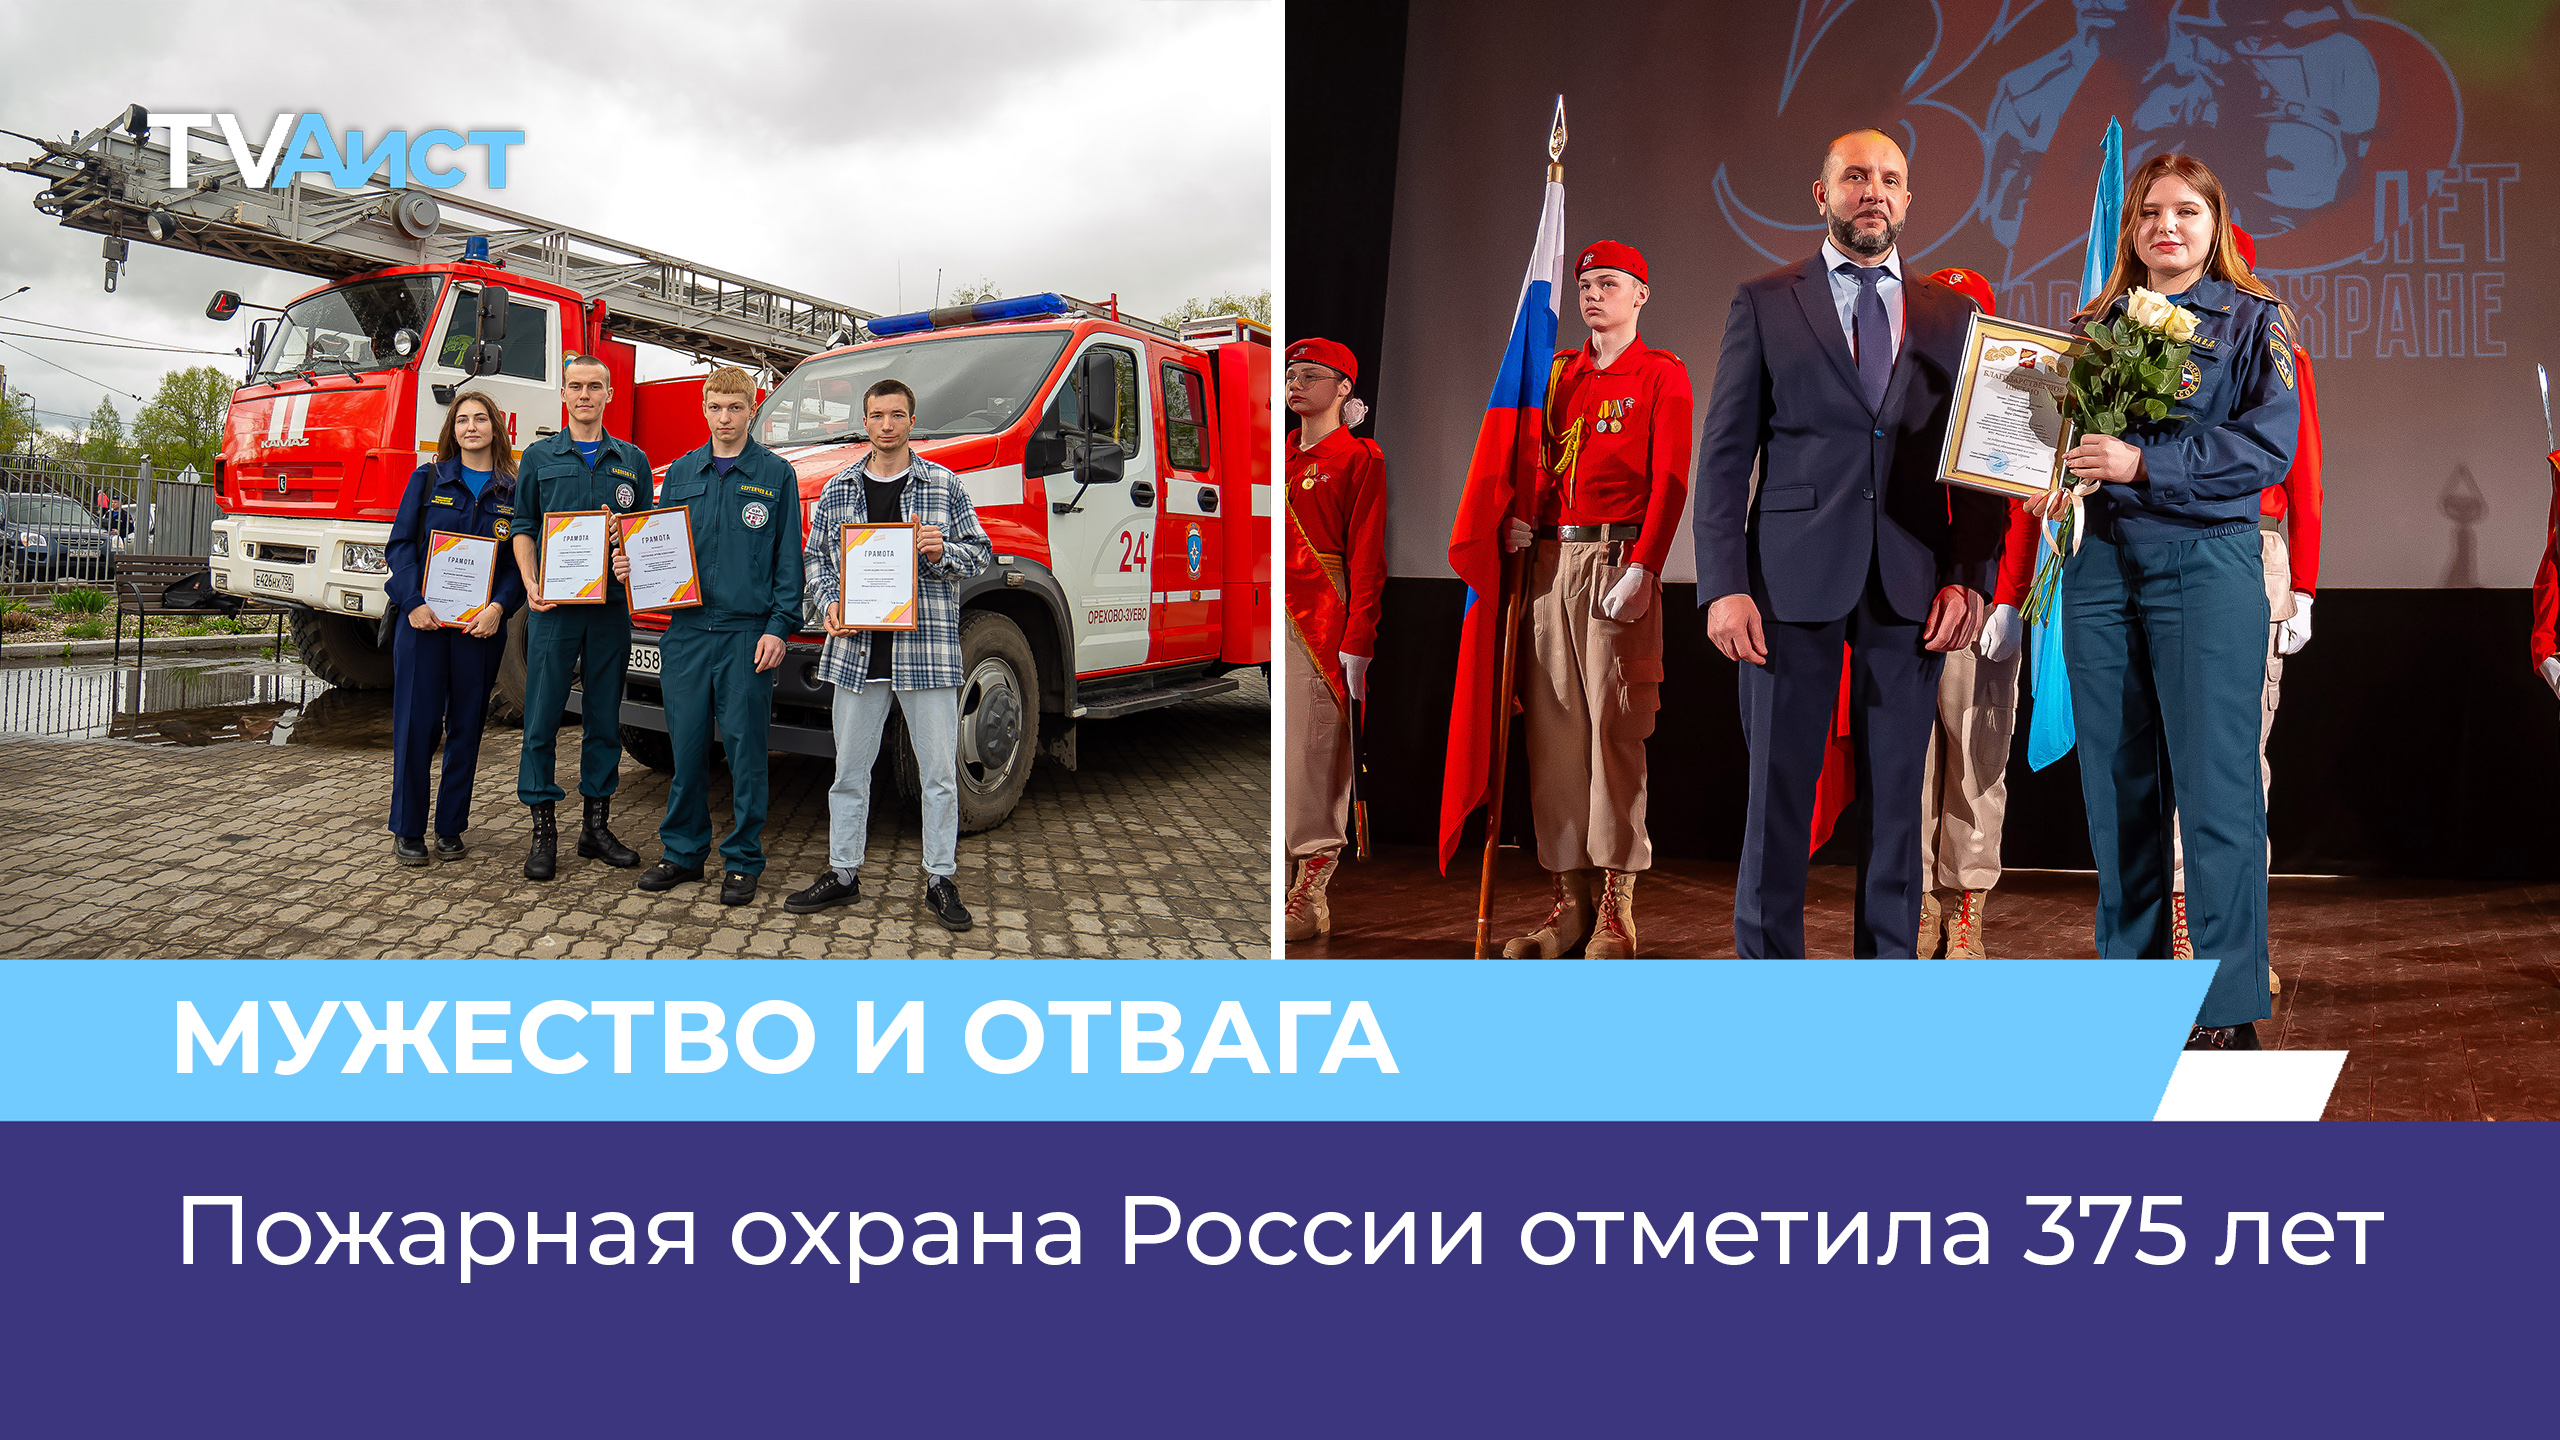 Пожарная охрана России отметила 375 лет